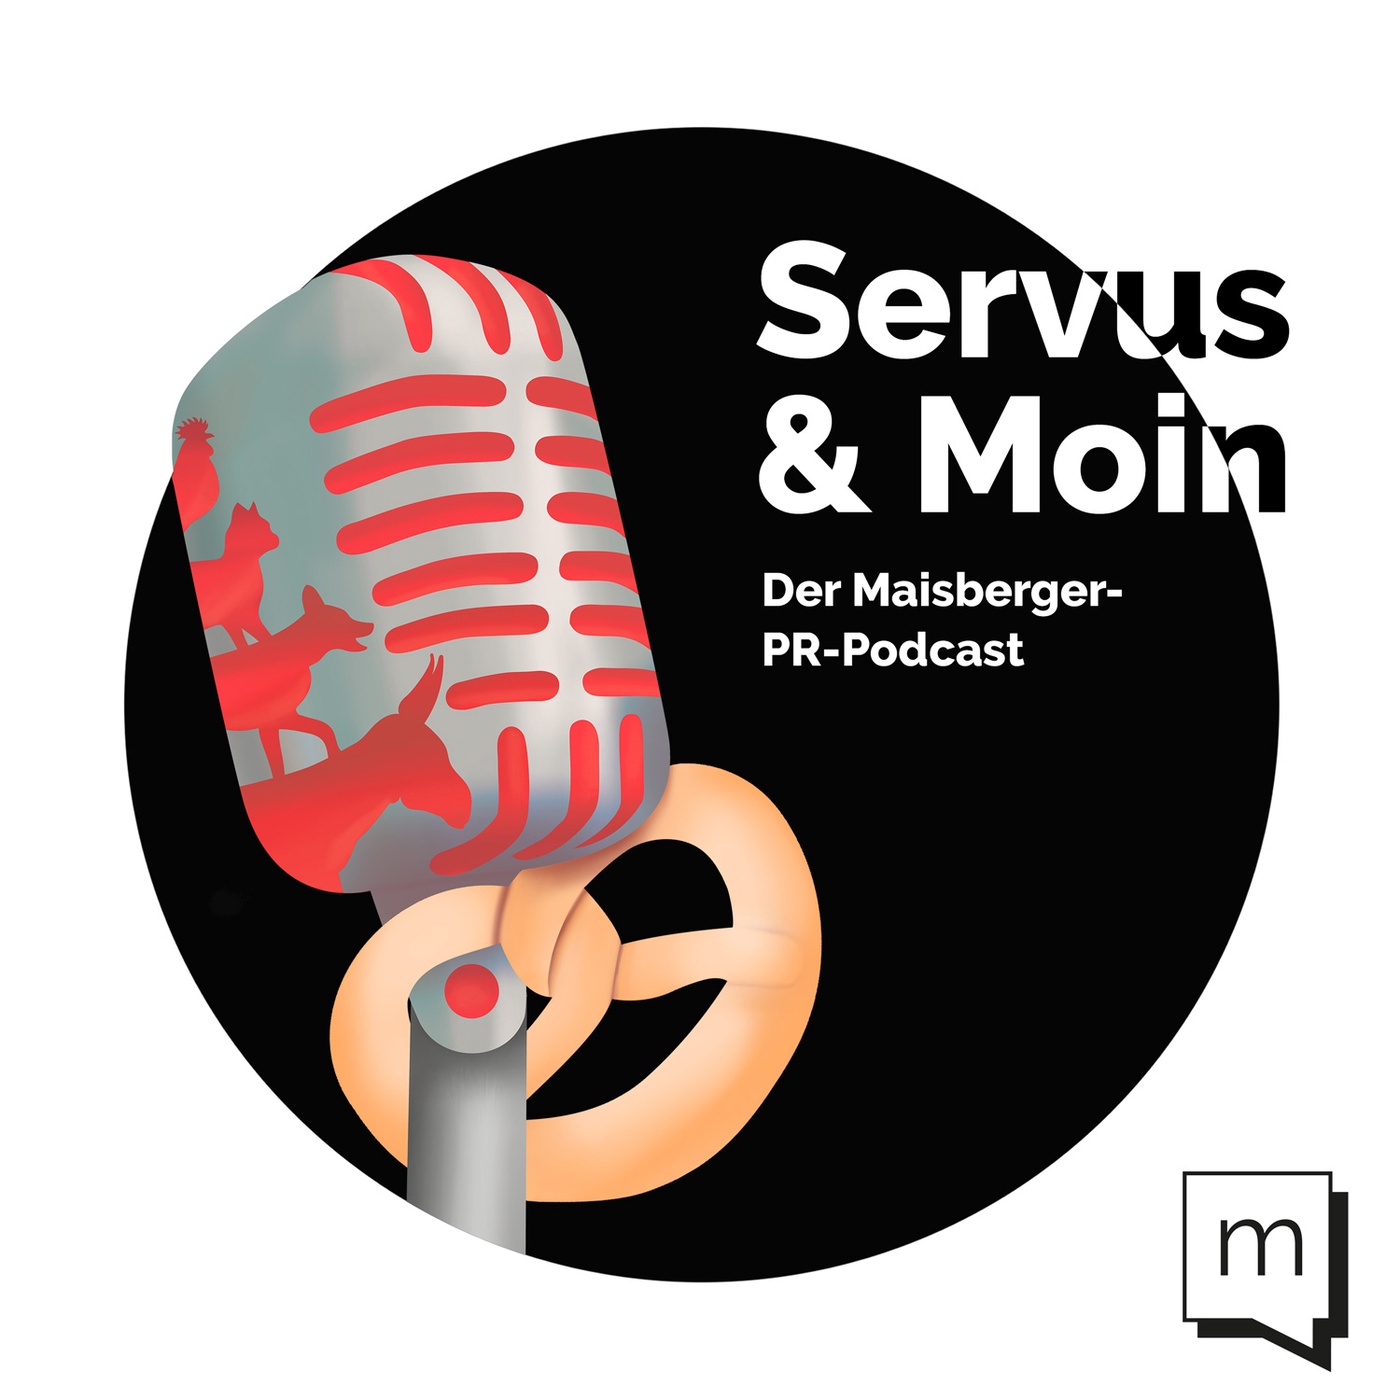 #Episode 14: Podcast-Vermarktung mit Podcast-Guru Steffen Hopf (Part 1)